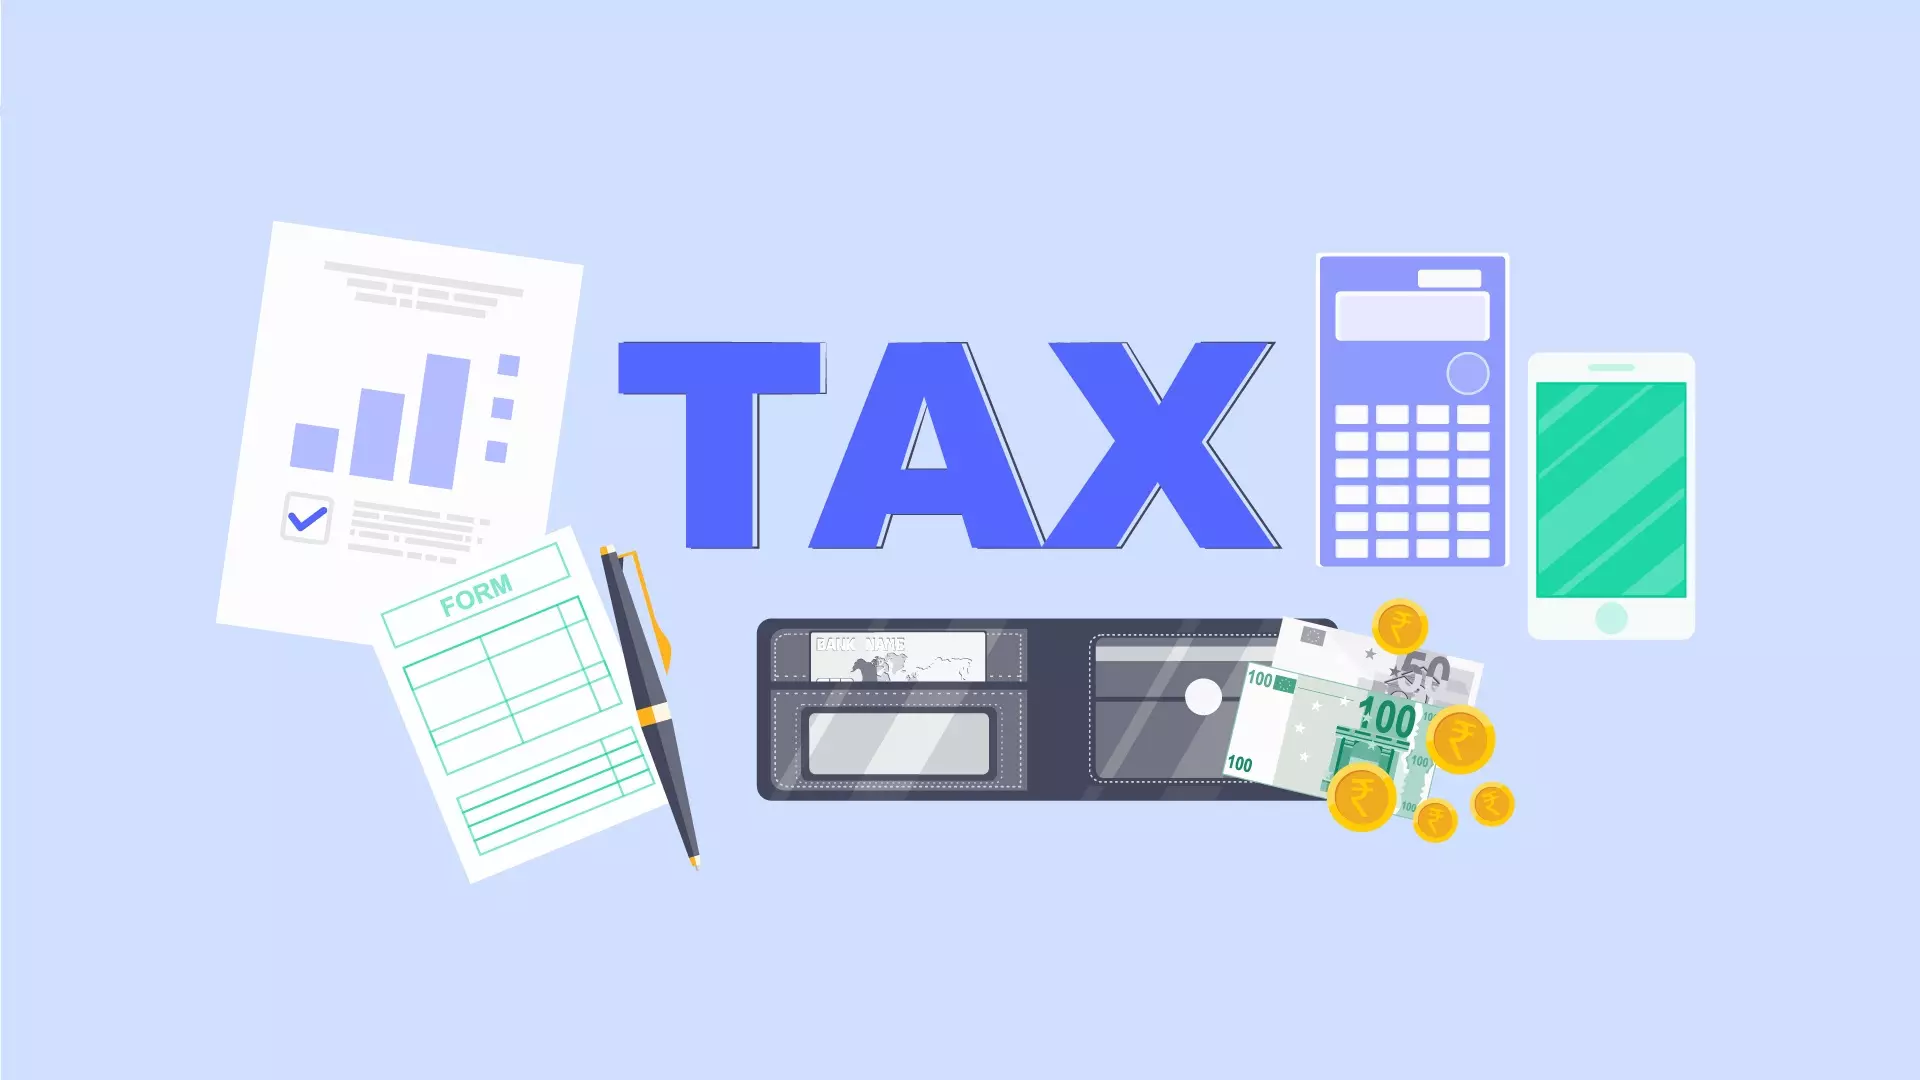 مالیات Tax